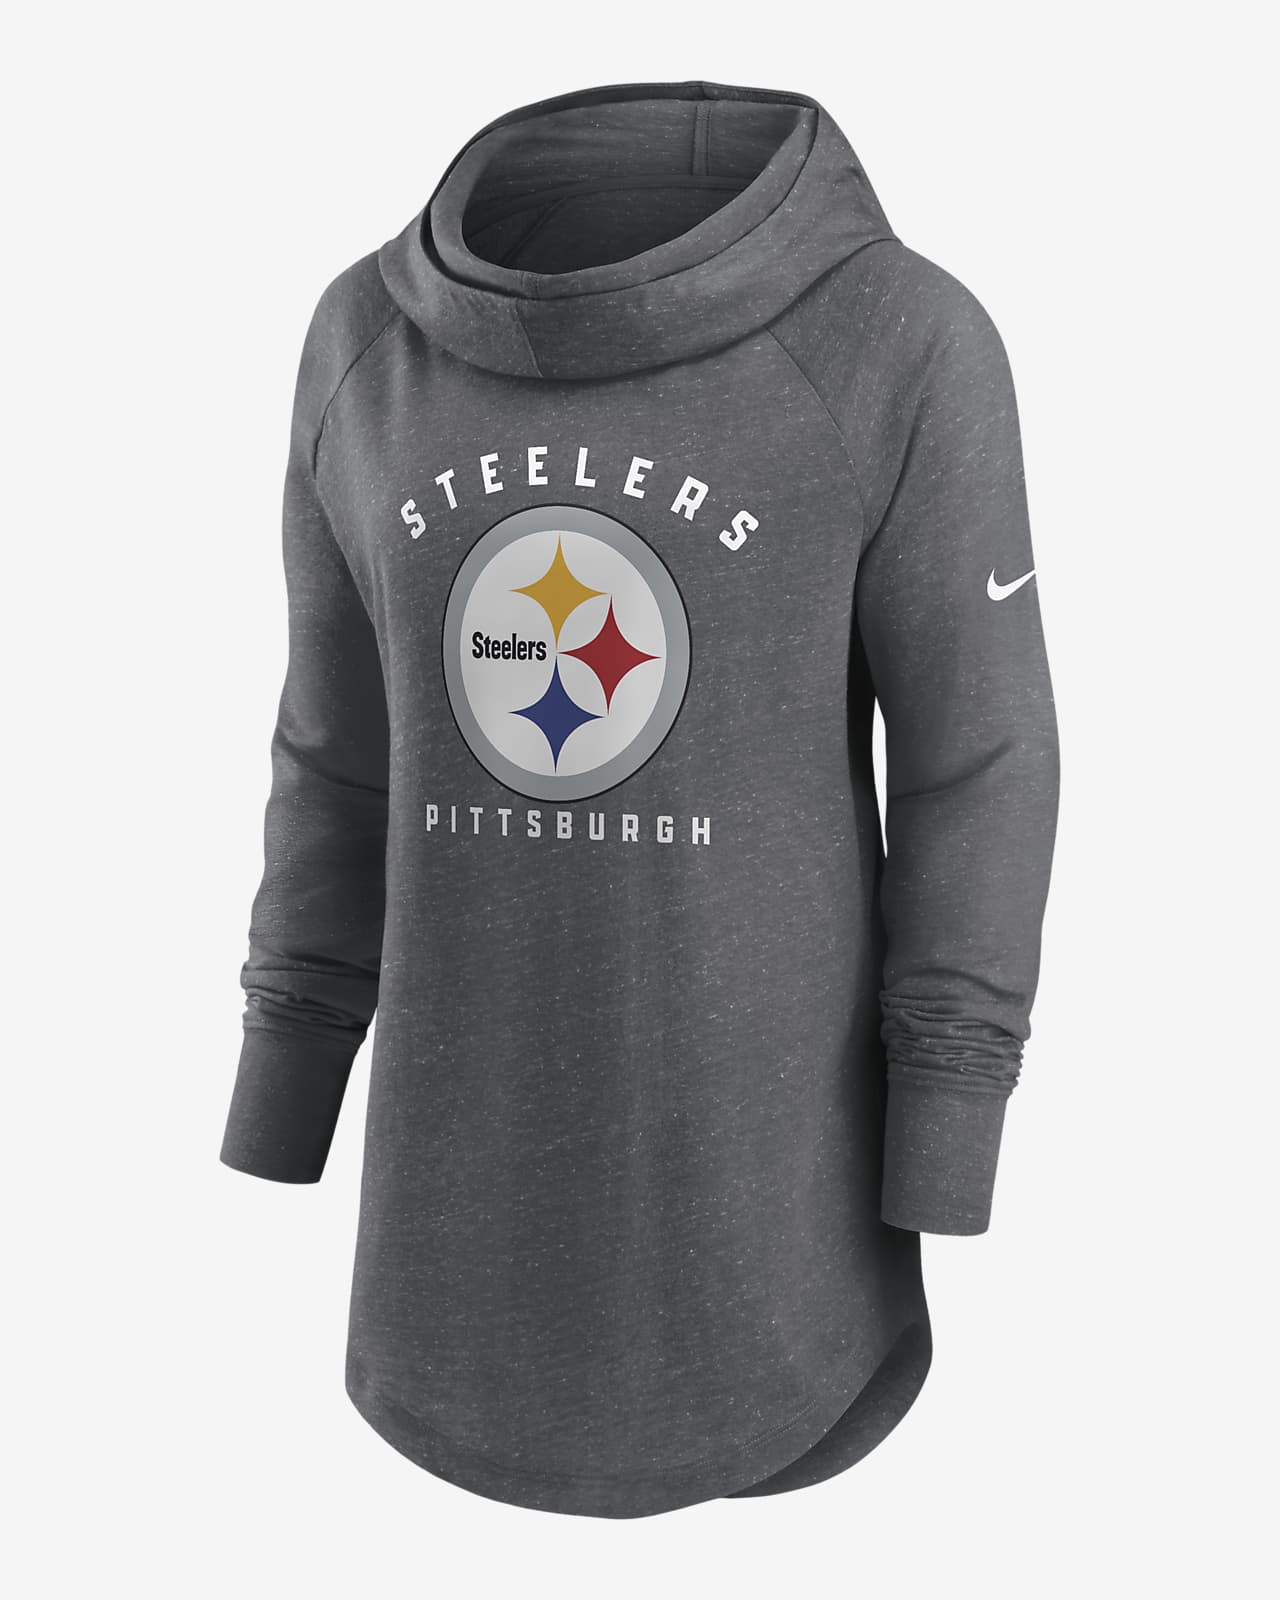 Nike Team (NFL Pittsburgh Steelers) Women's Pullover Hoodie.